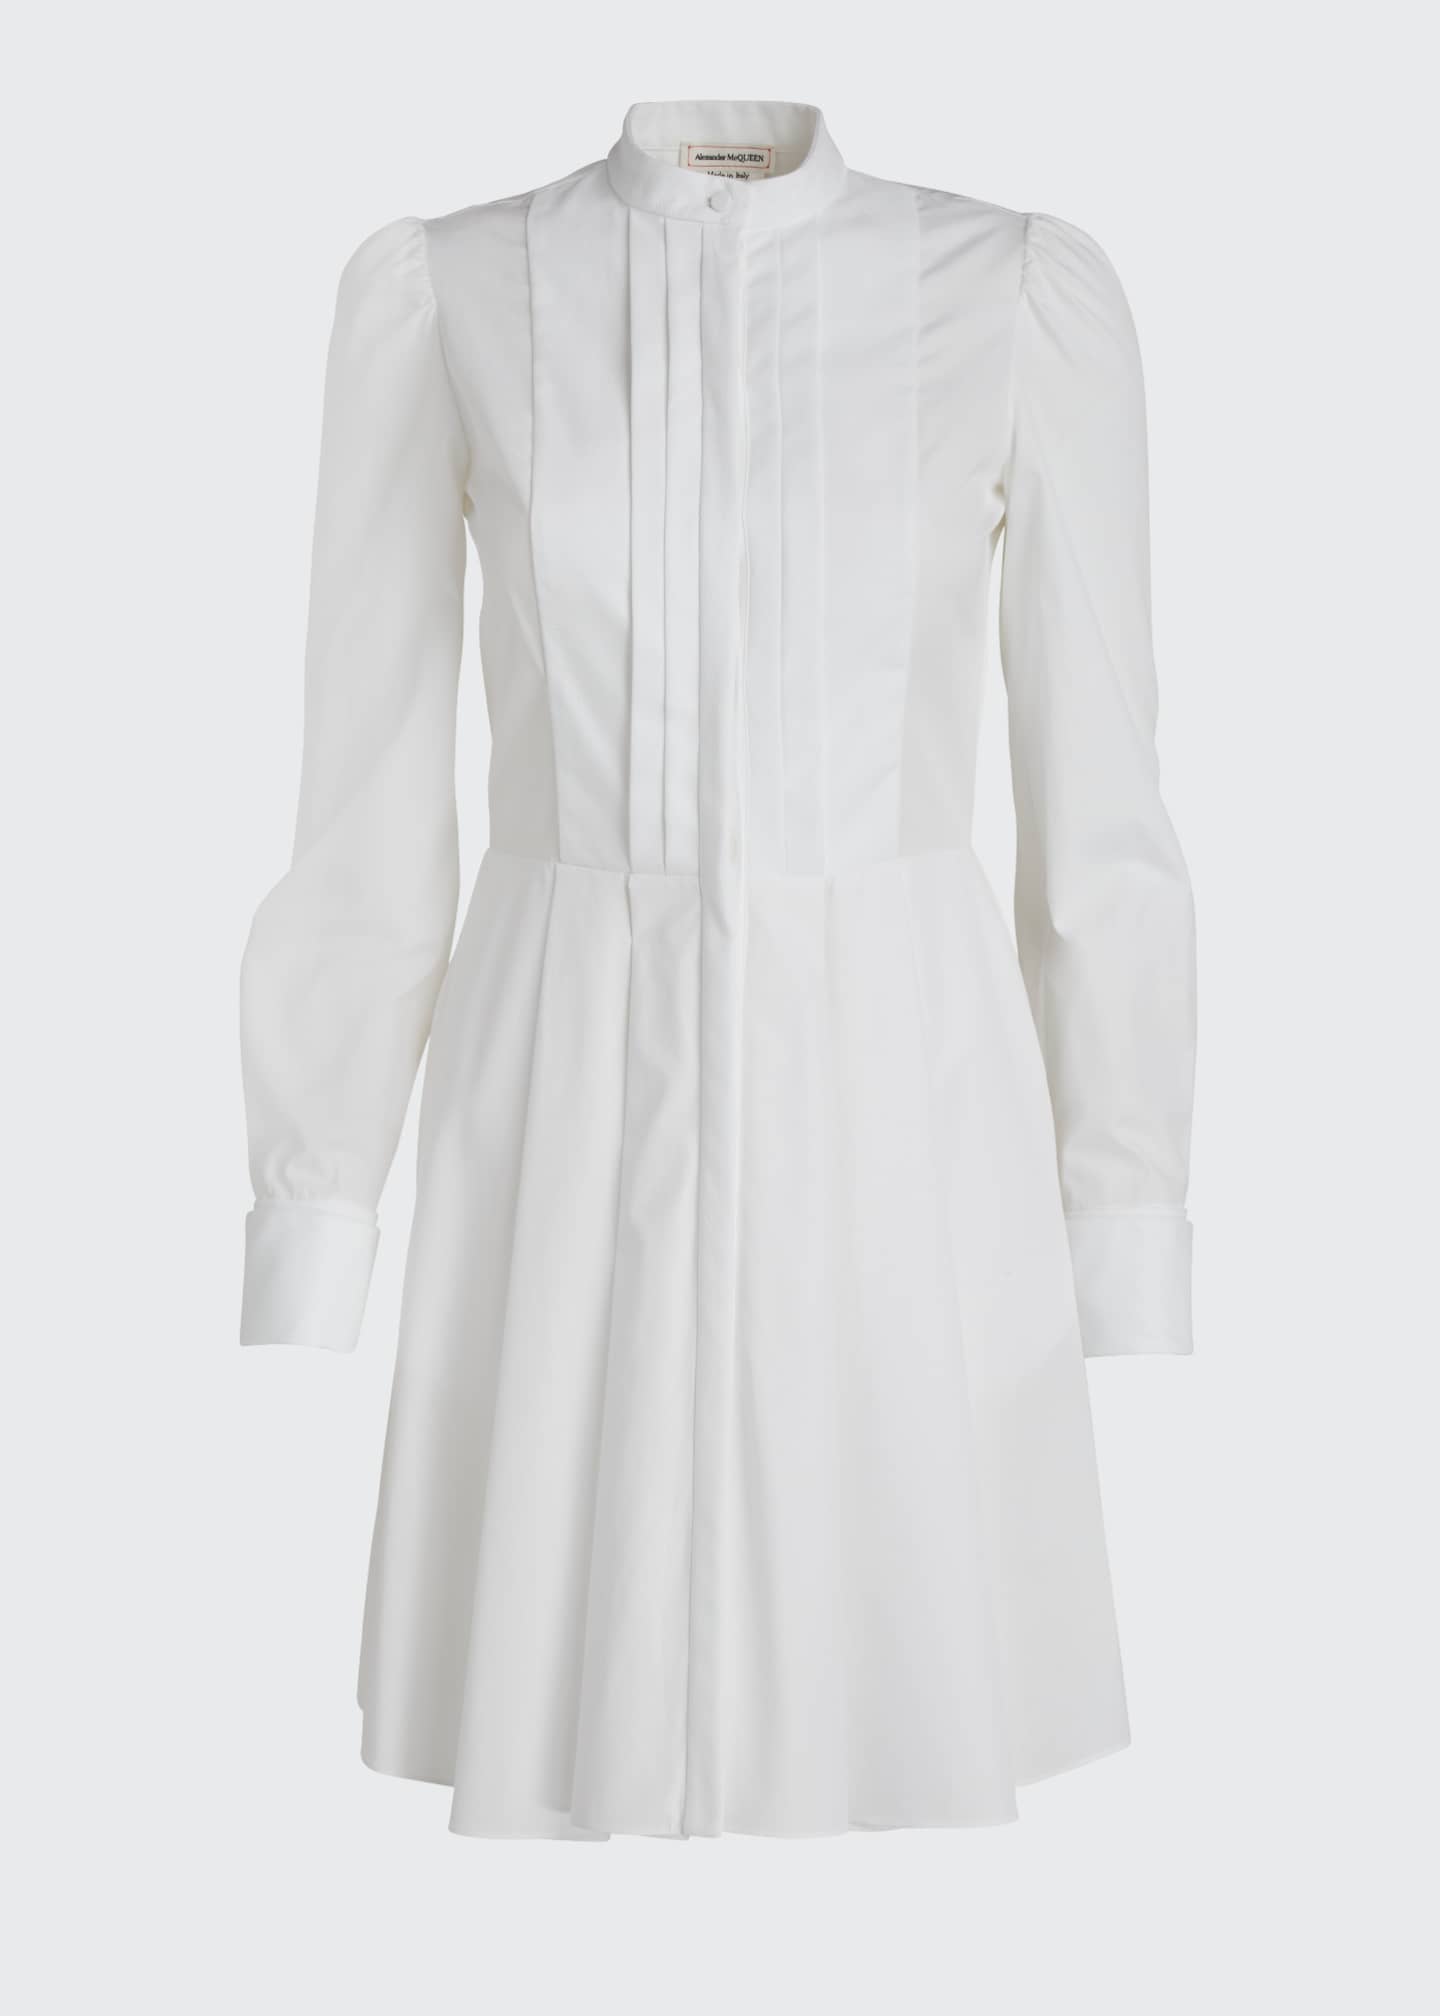 Alexander McQueen Pleated Poplin Shirtdress - Bergdorf Goodman